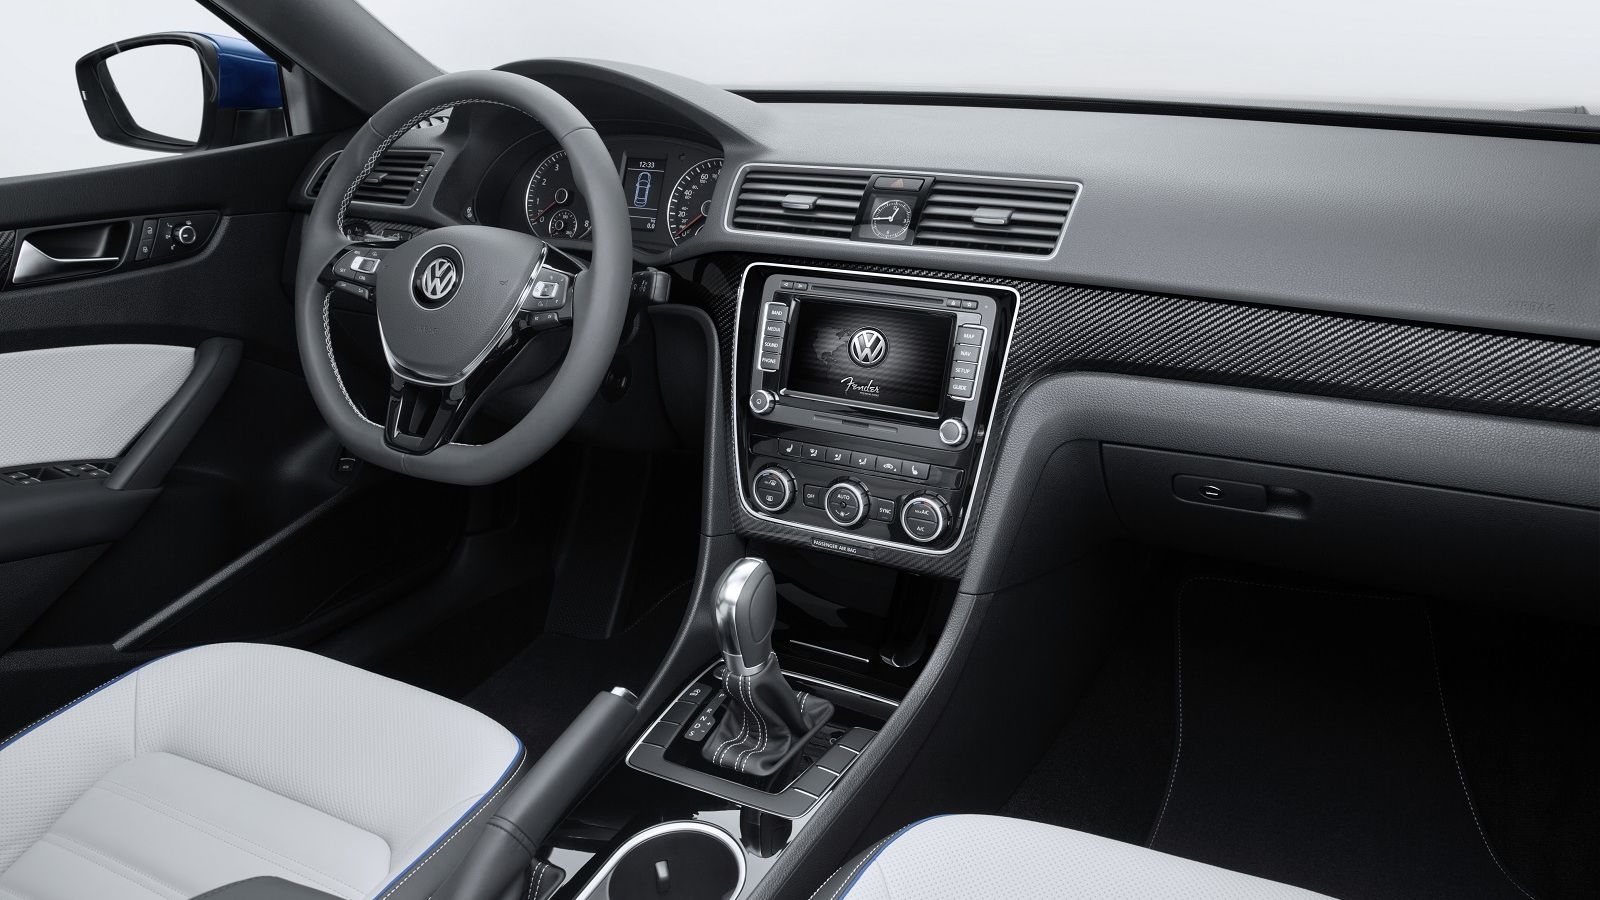 Volkswagen Passat BlueMotion Concept, 2014 Detroit Auto Show